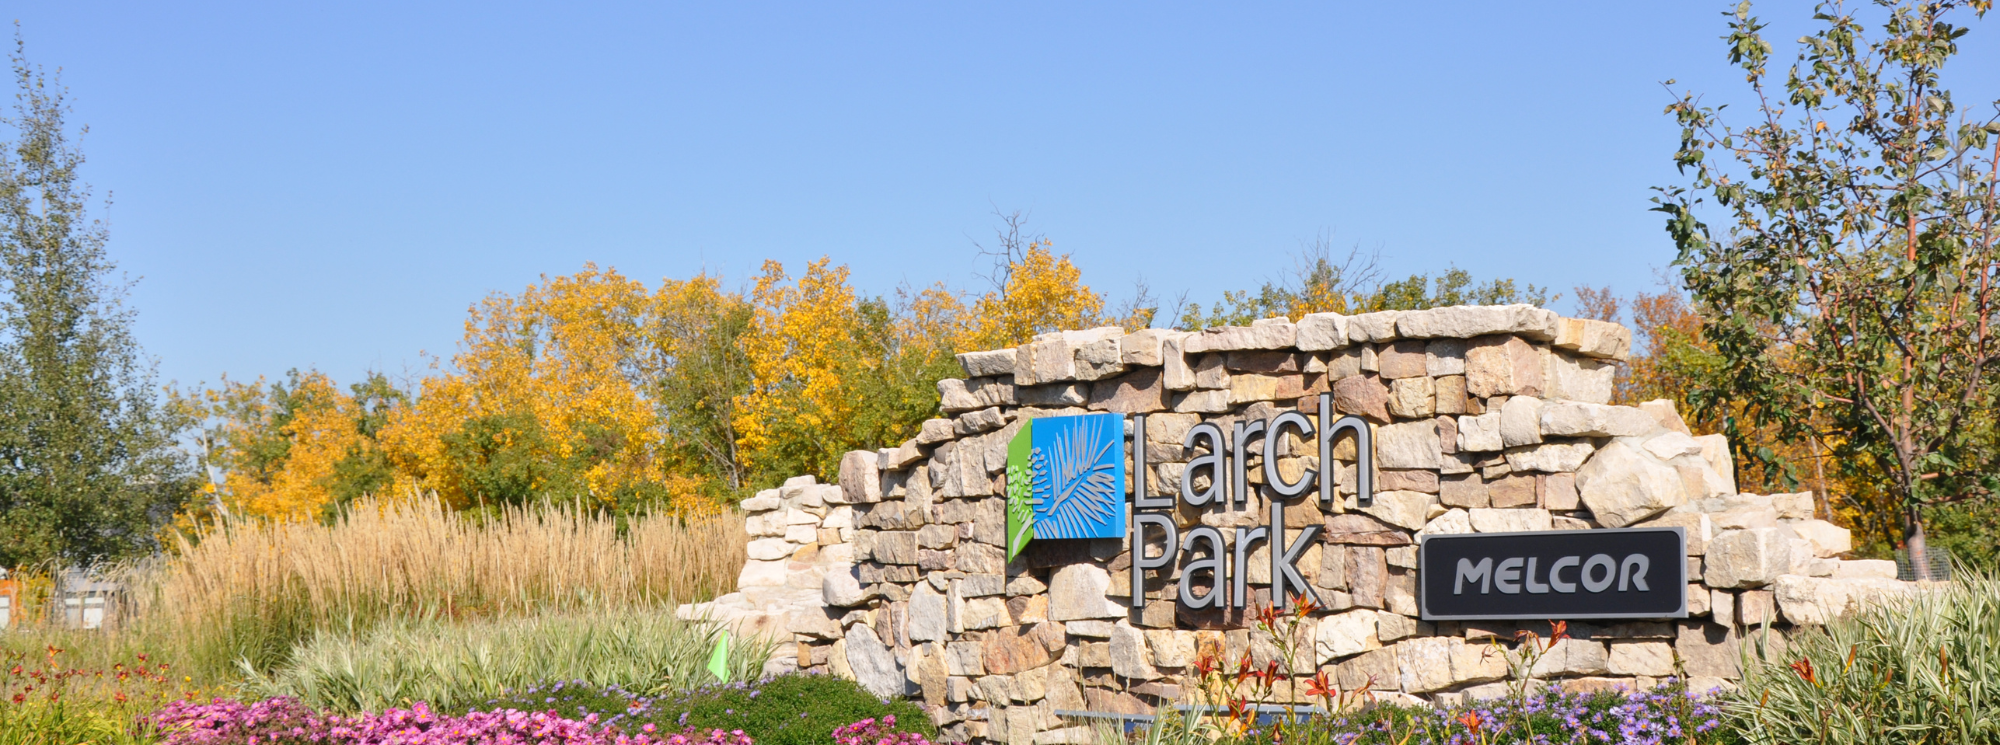 Larch Park in southwest Edmonton